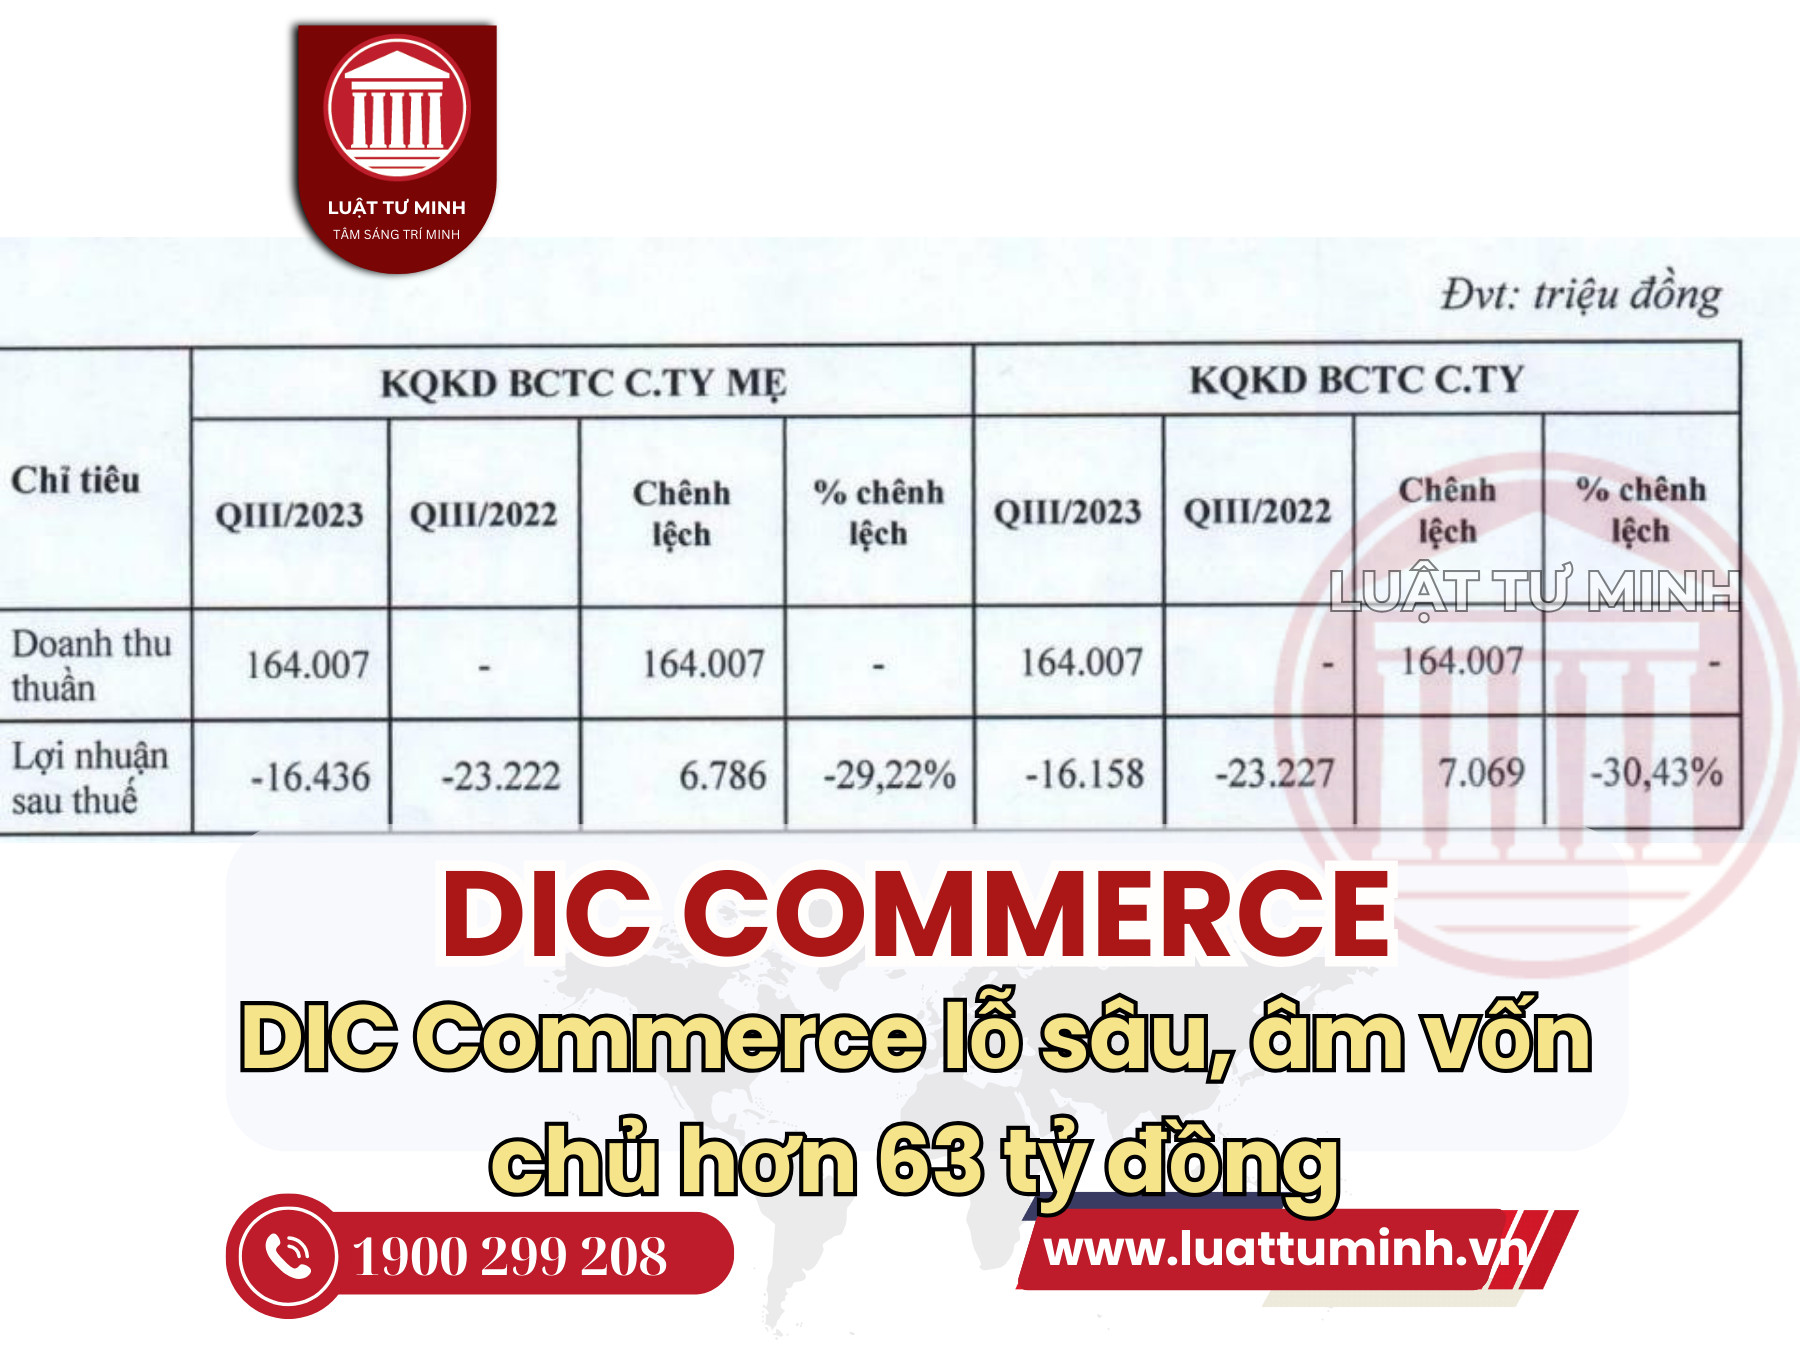 DIC Commerce lỗ sâu, âm vốn chủ hơn 63 tỷ đồng - Luật Tư Minh